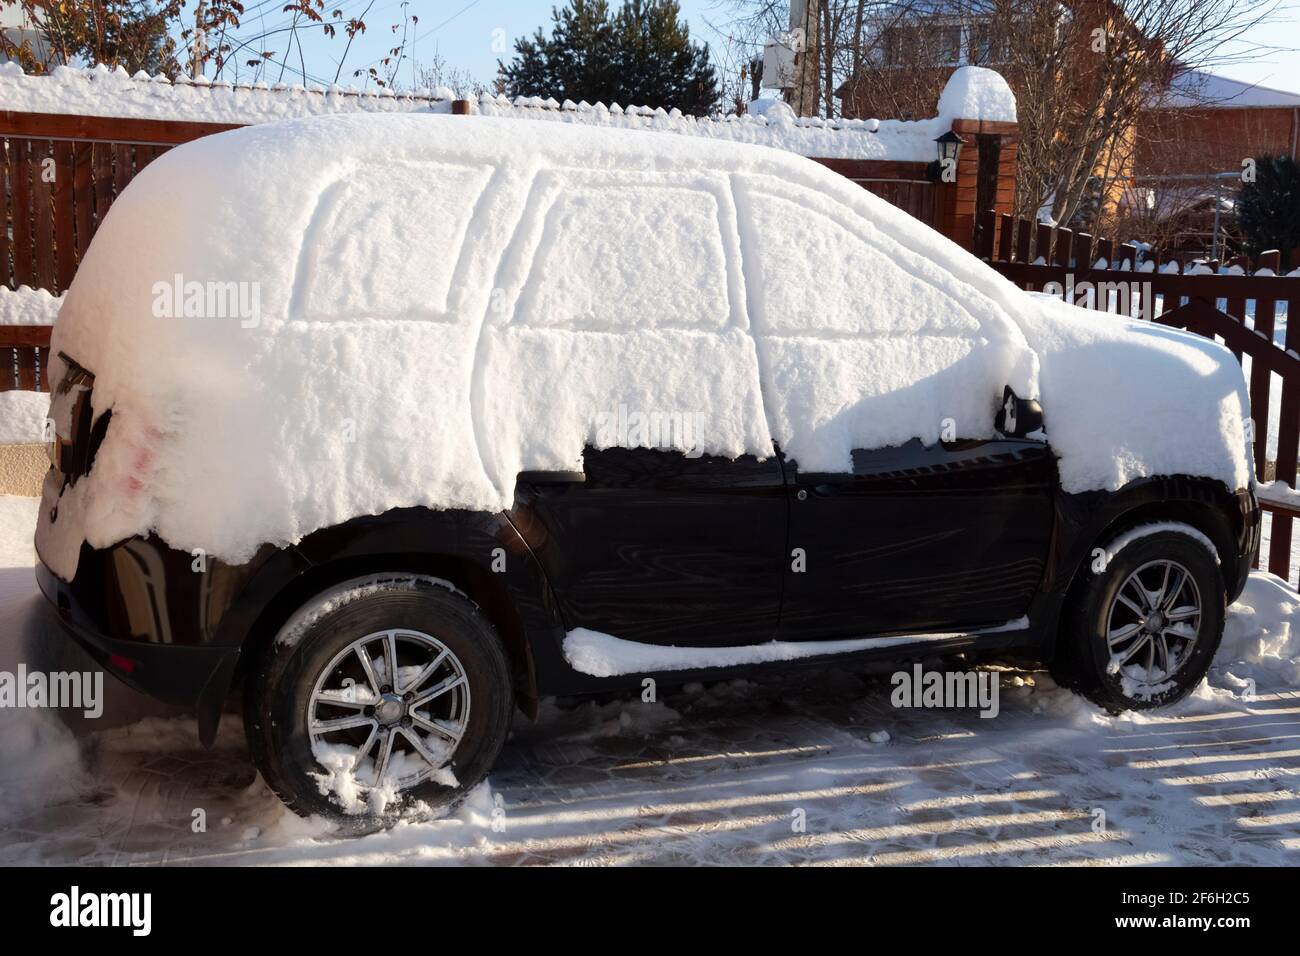 Ein Auto, das nach einem Schneesturm komplett mit dickem Schnee